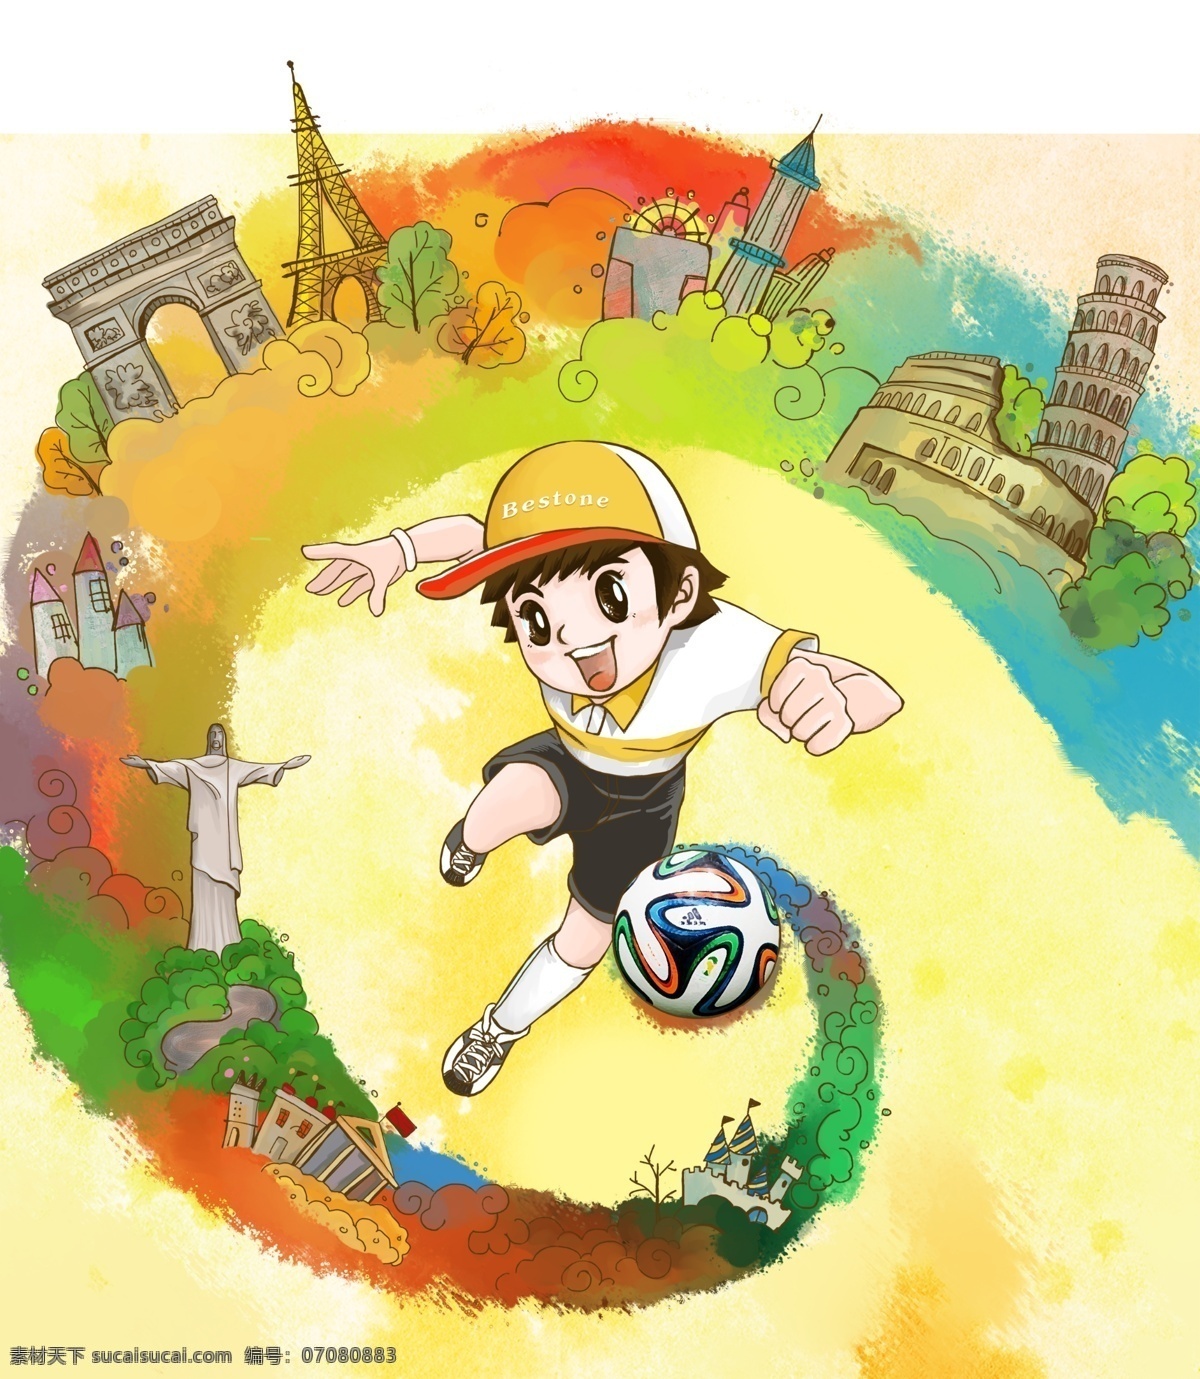 分层 巴西 插画 德国 法国 世界杯 漩涡 意大利 强国 汇总 模板下载 源文件 矢量图 日常生活